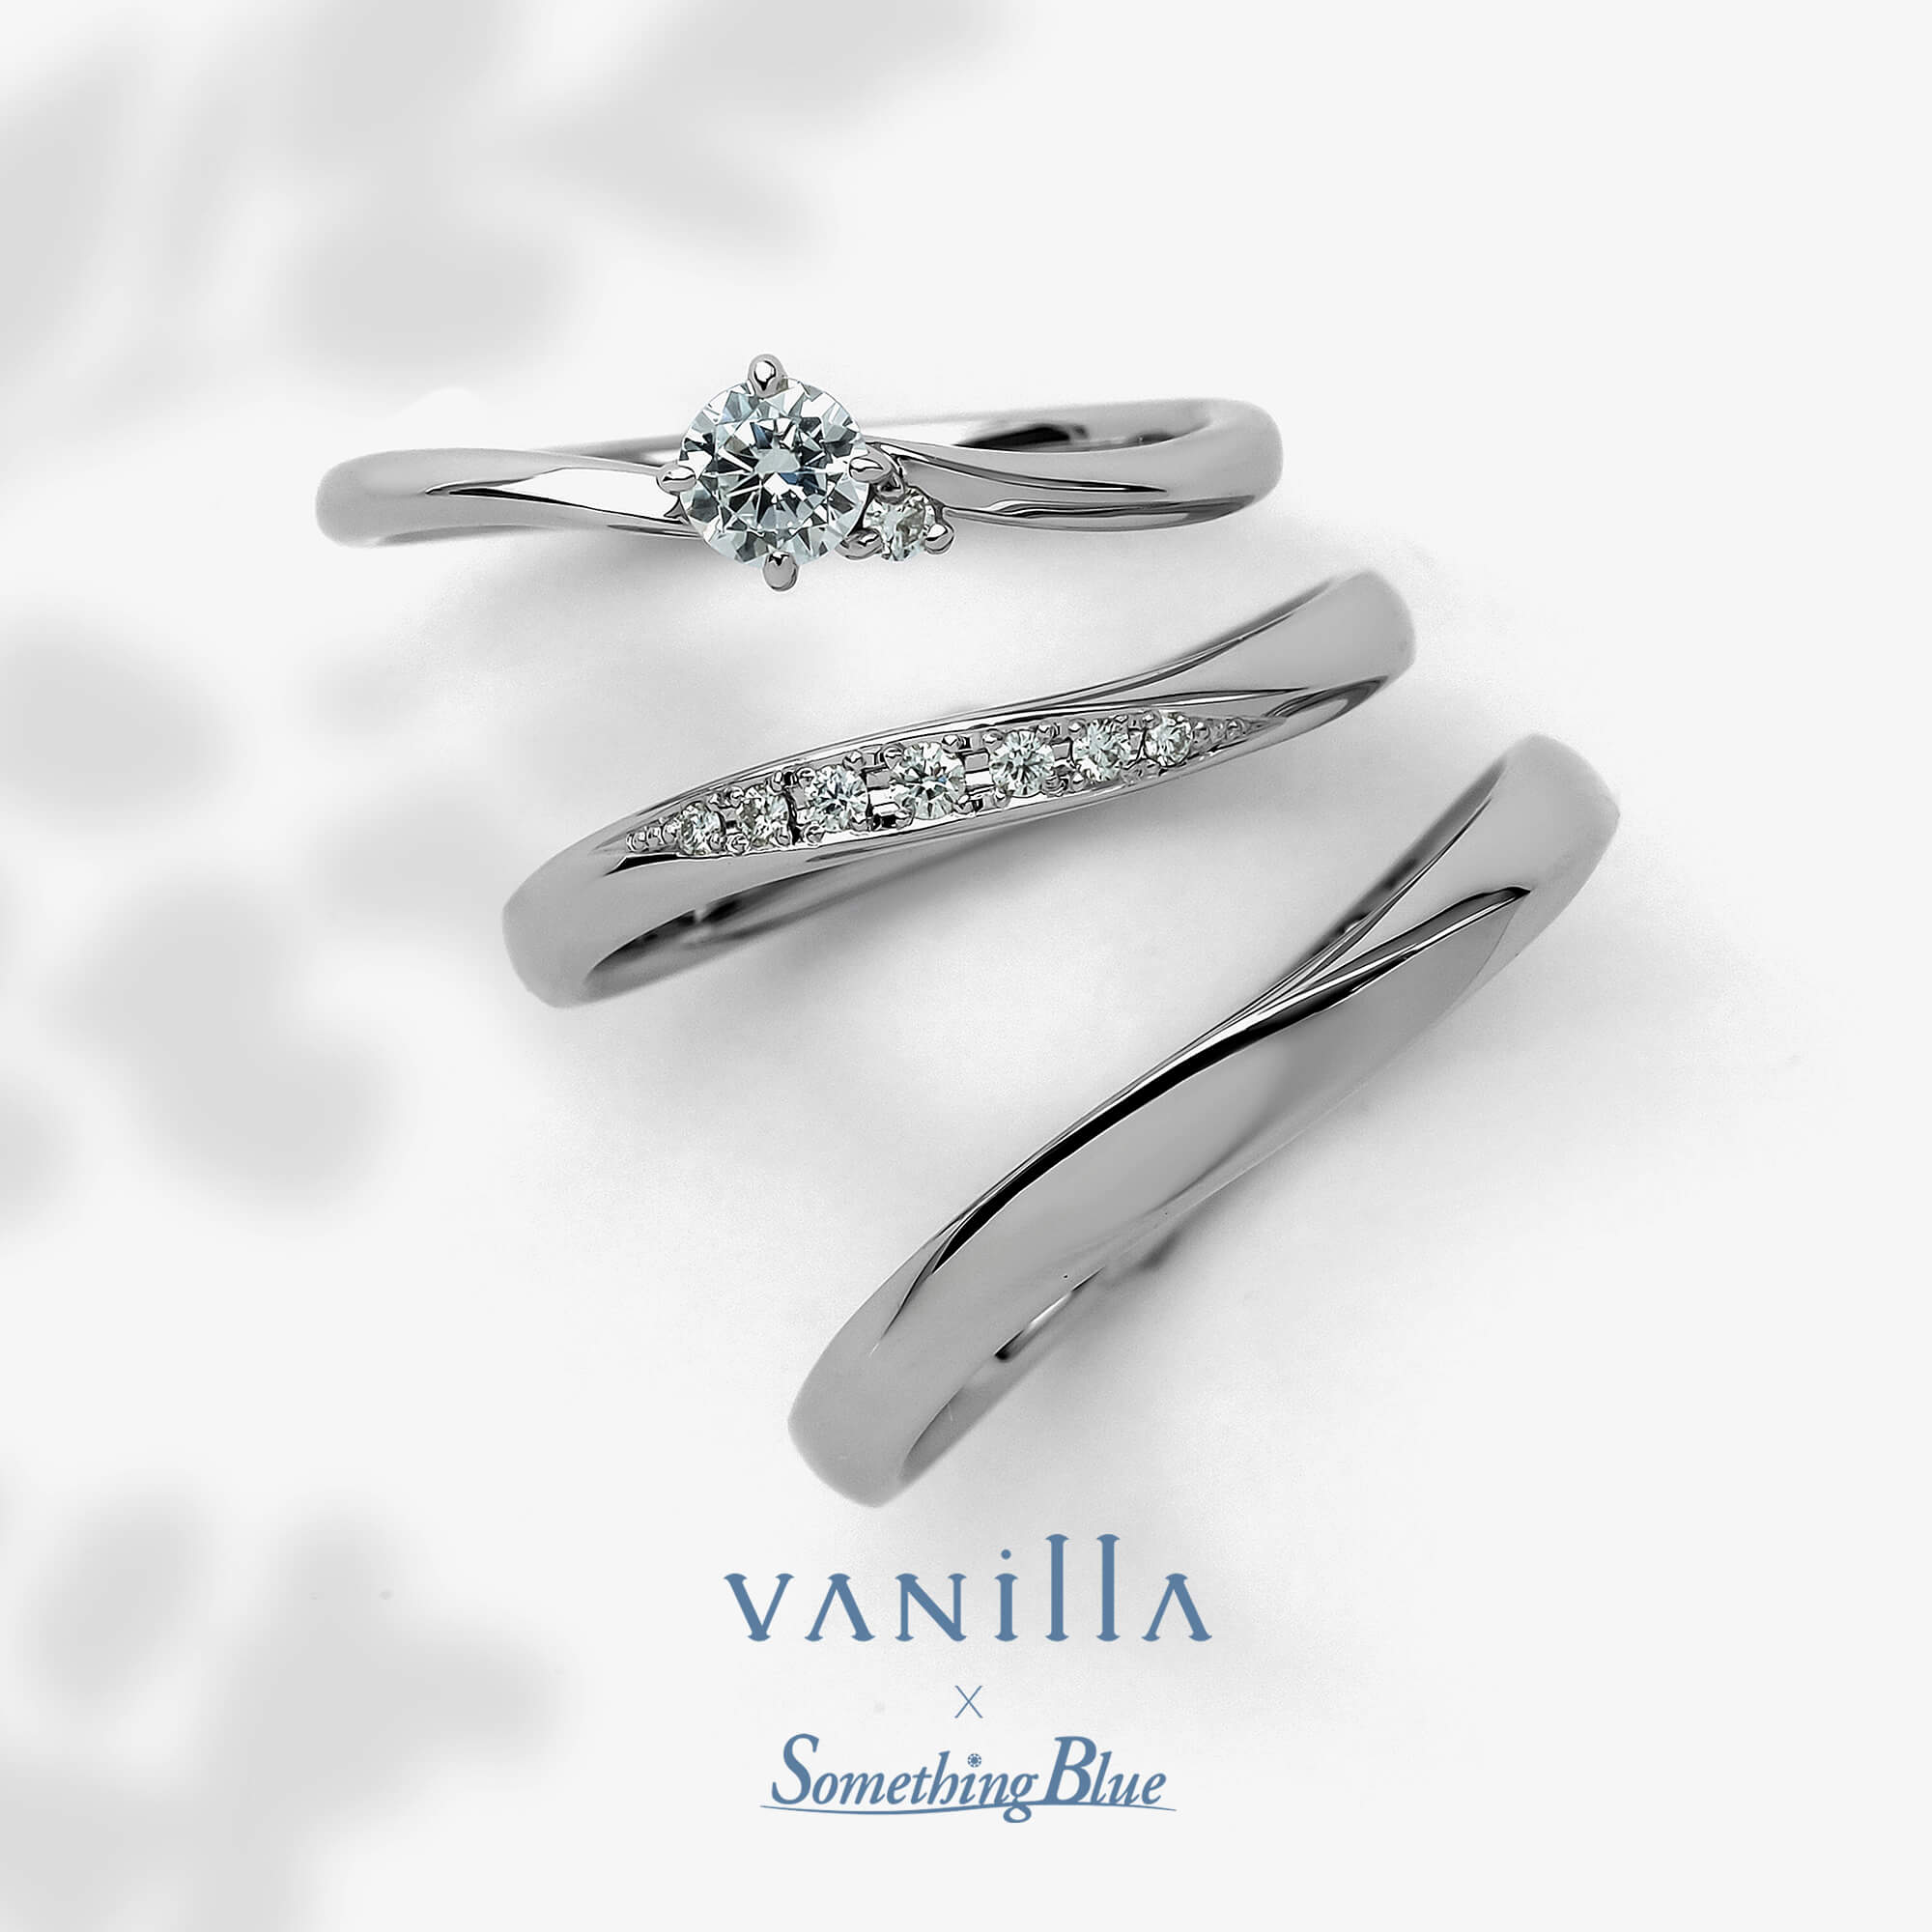 VANillA×SomethingBlueヴァニラ×サムシングブルーの婚約指輪エンゲージリングEngagementringと結婚指輪マリッジリングMarriageringとセットリングSetringのCalla カラー